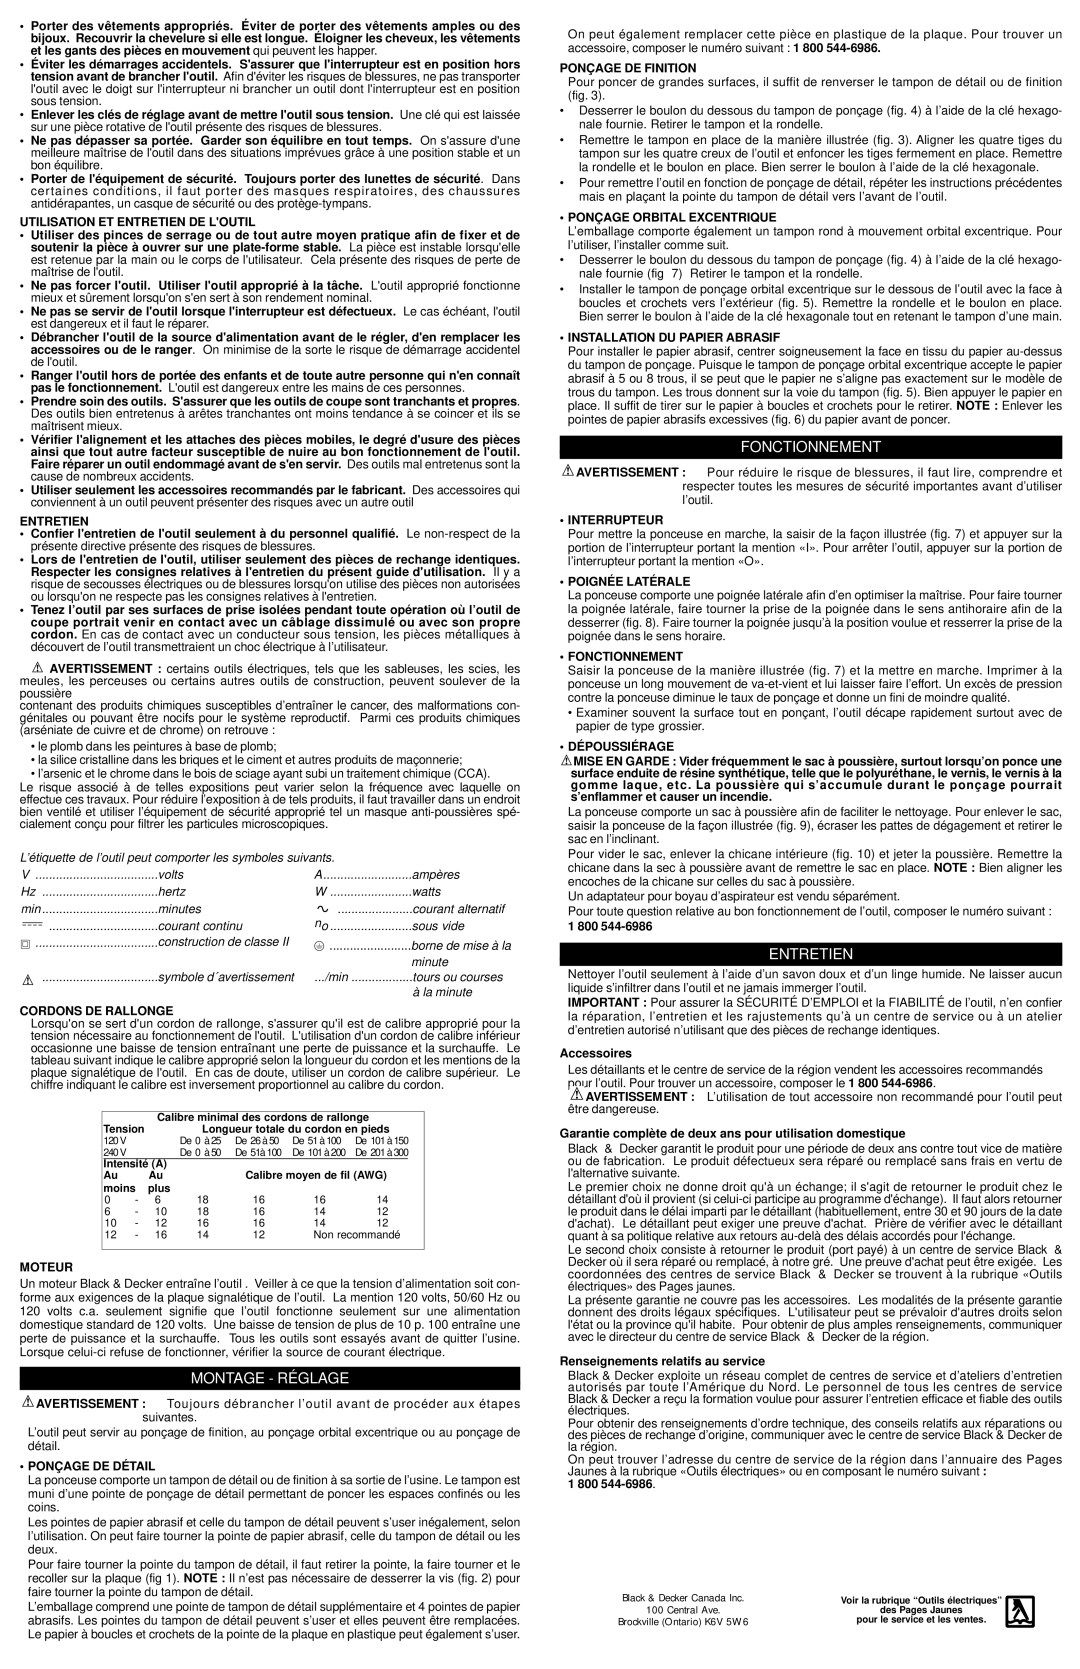 Black & Decker 375886-00, RO600 instruction manual Montage - Ré Glage, Fonctionnement, Entretien 